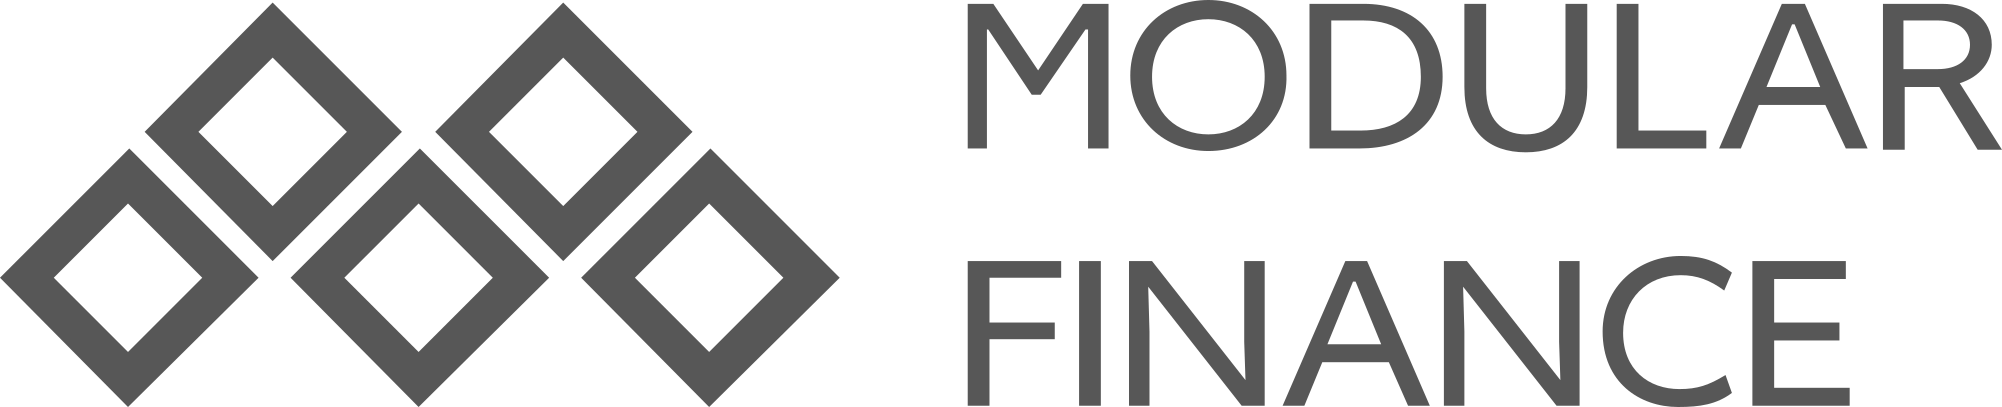 Company logo for Modular Finance